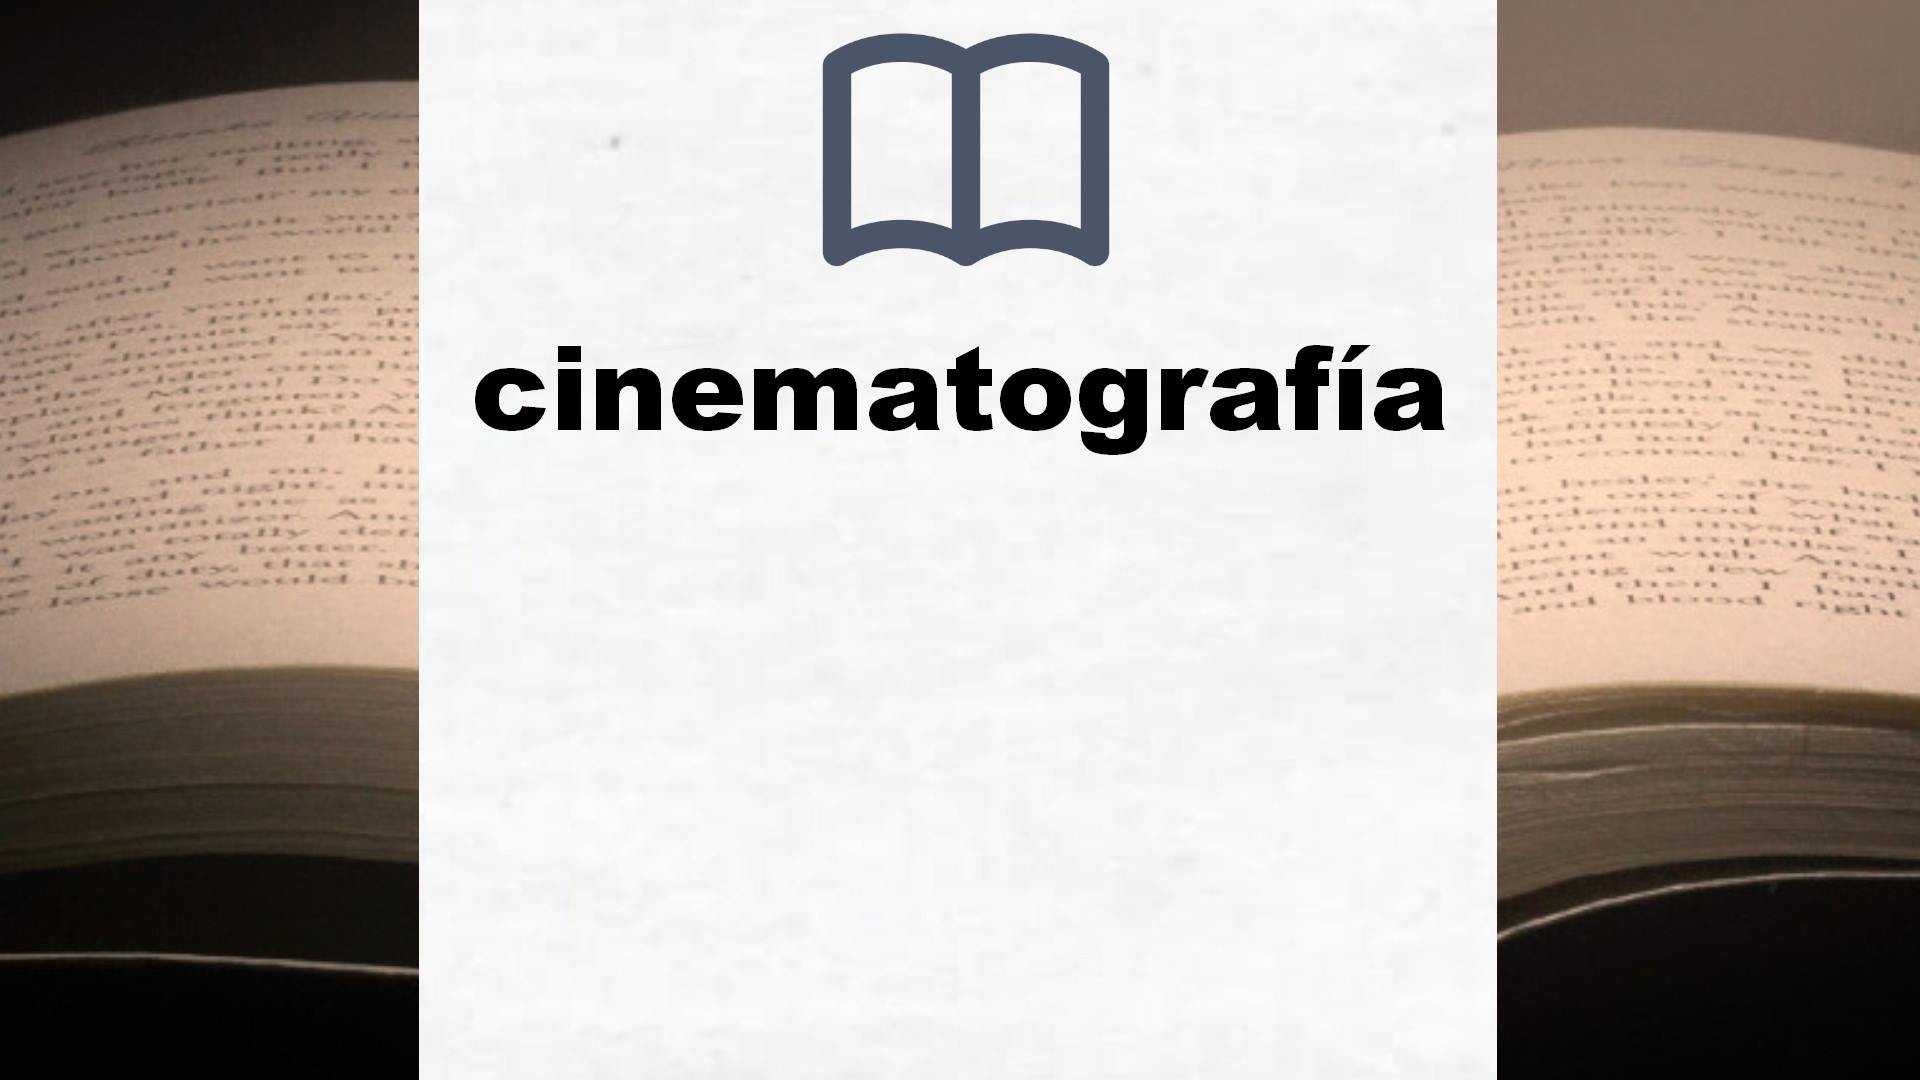 Libros sobre cinematografía